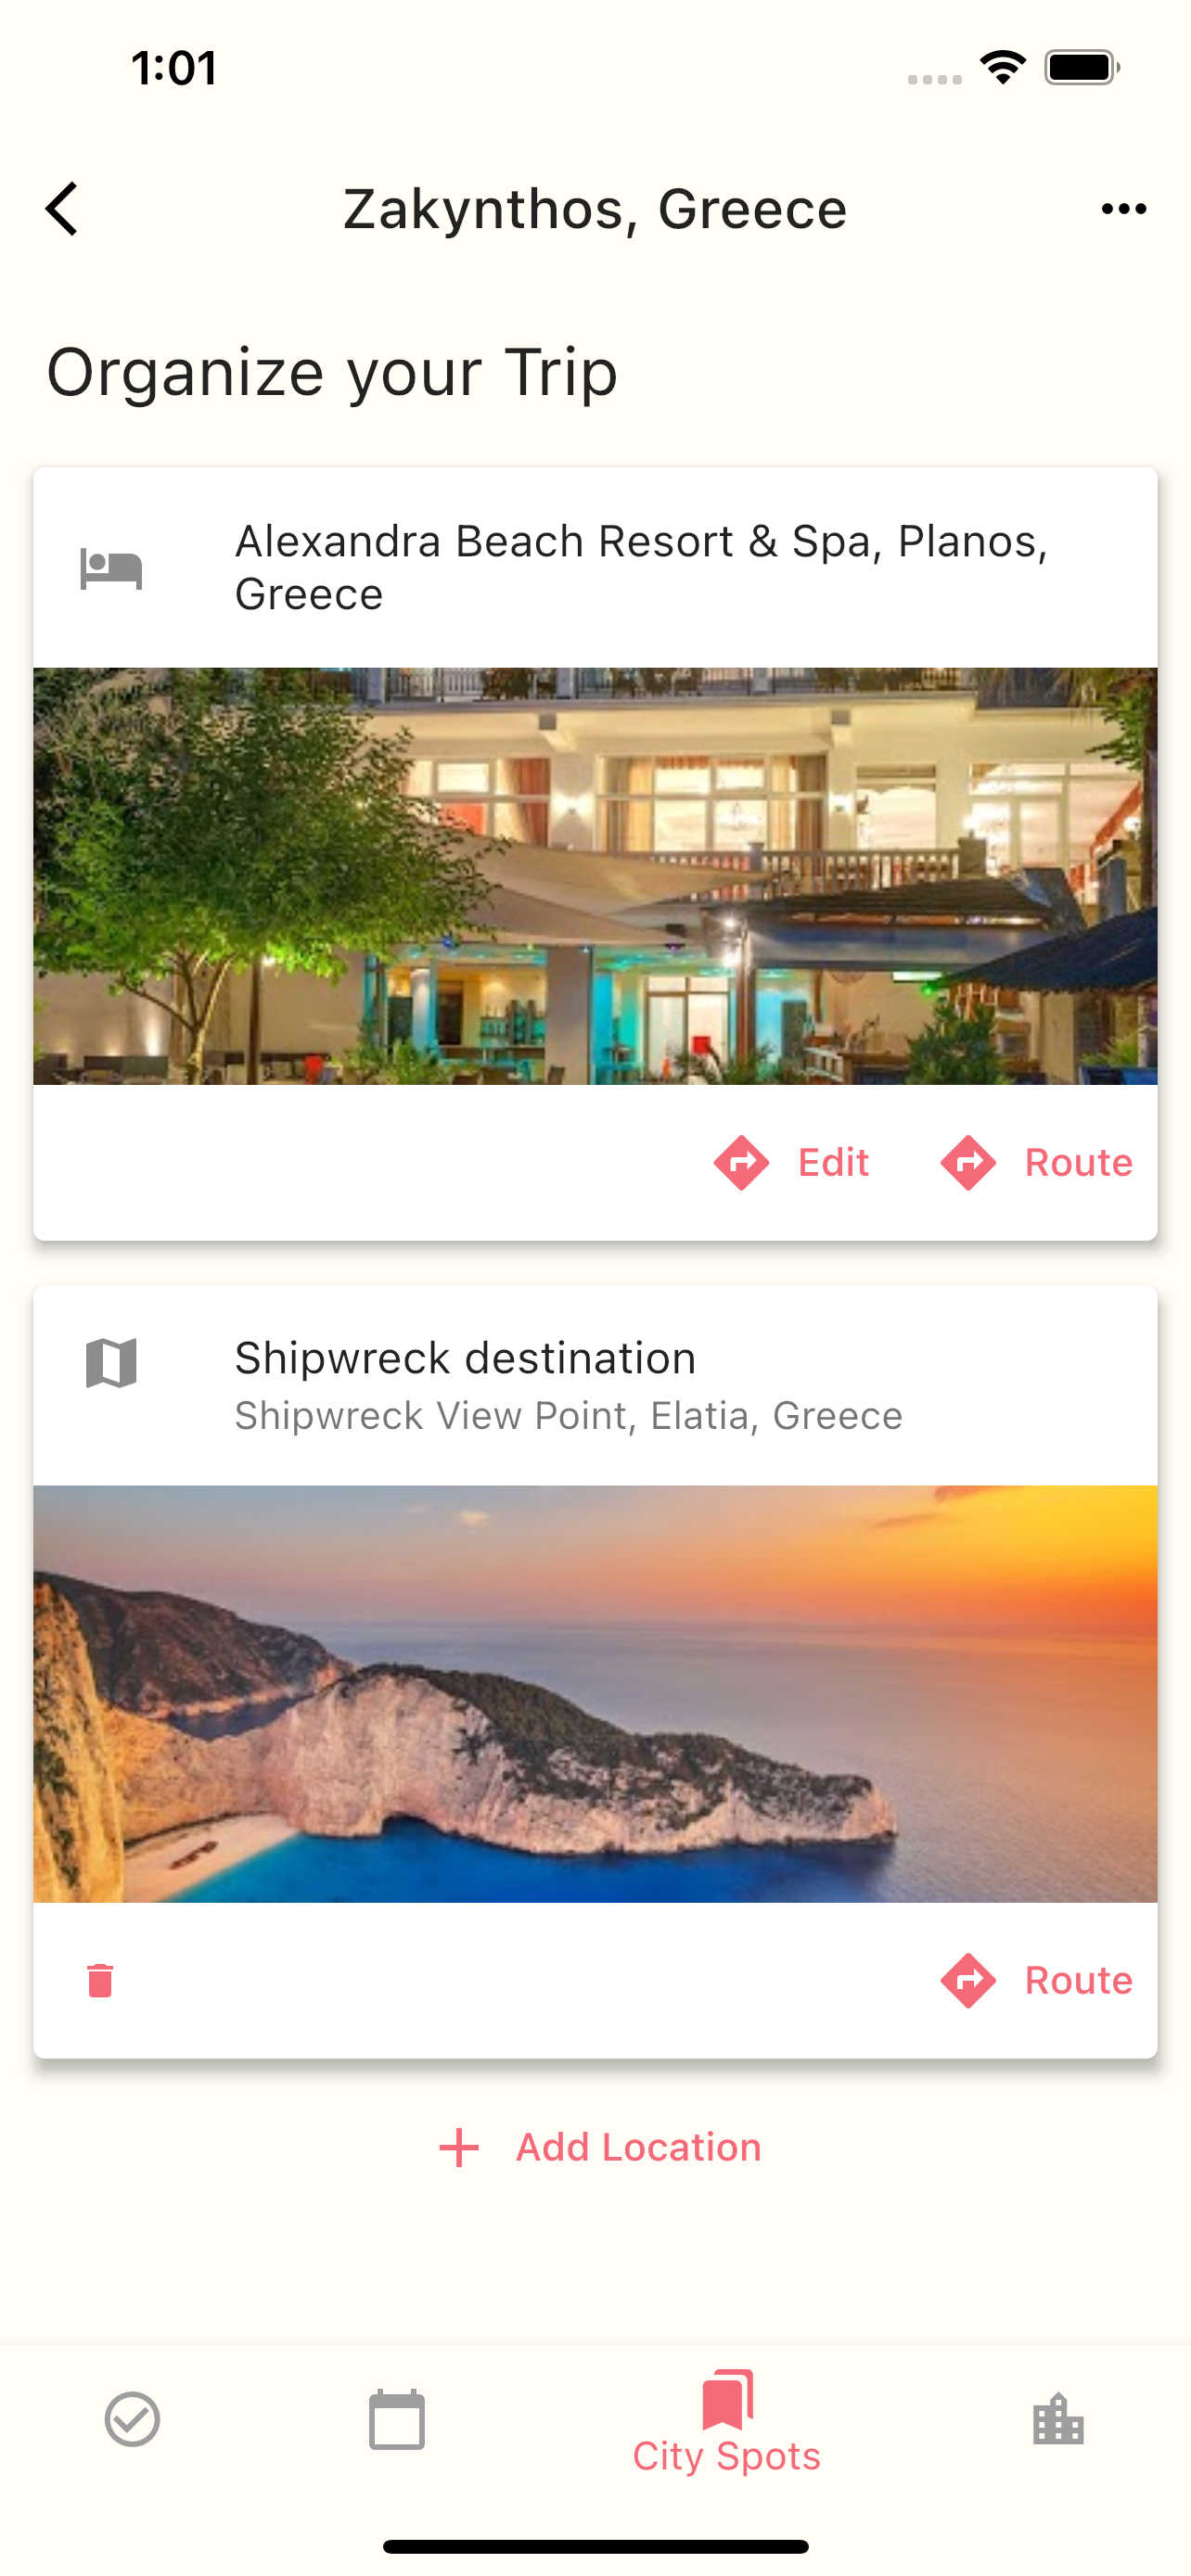 Packing List App Sreenshot to plan a trip